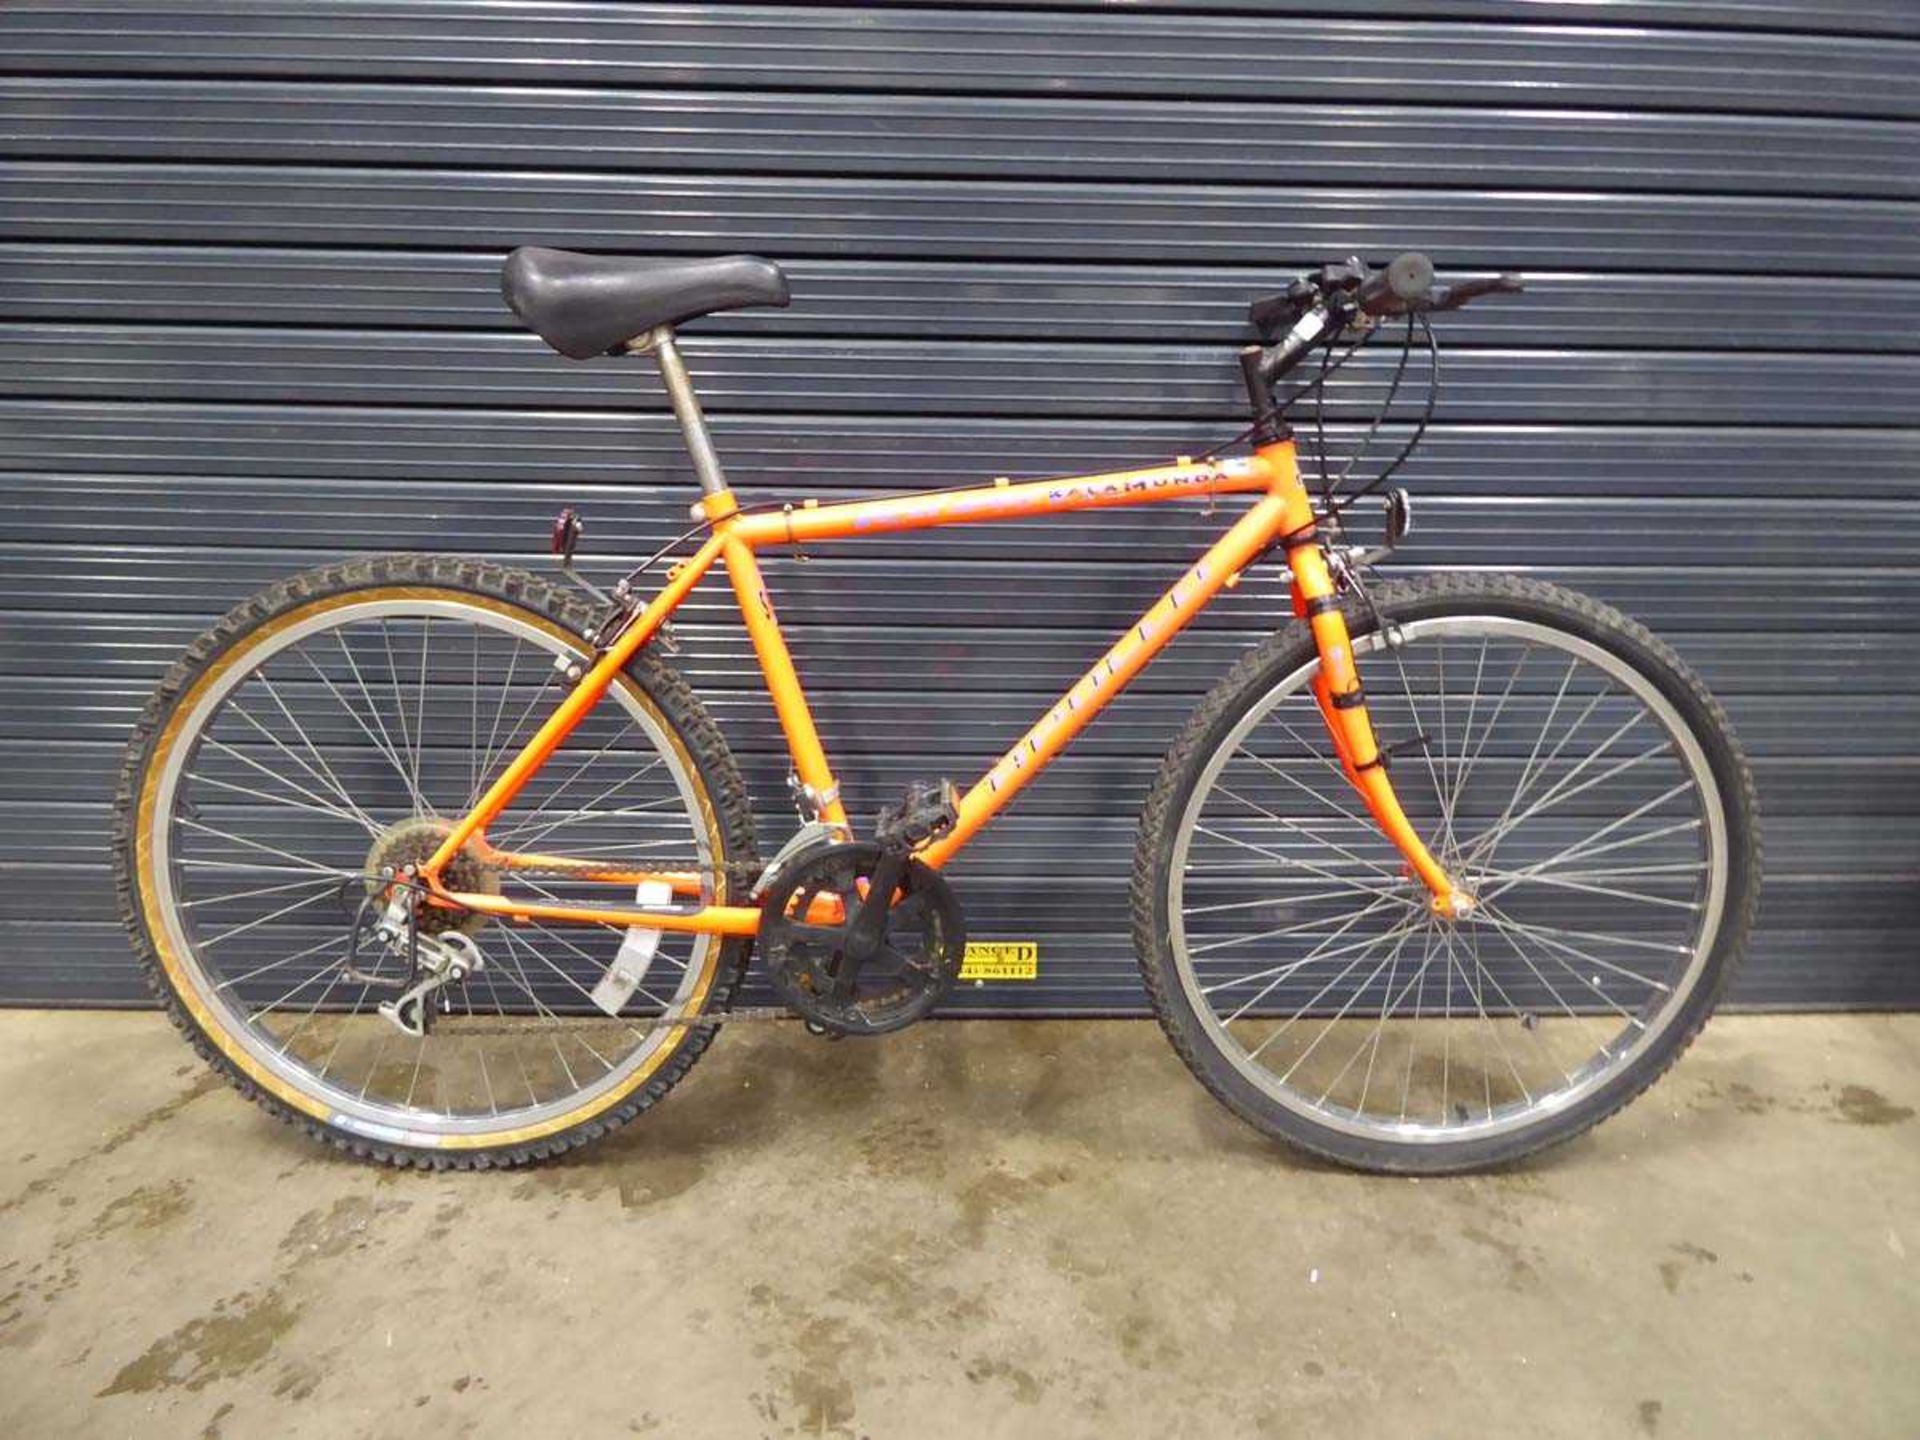 Orange Apollo mountain bike